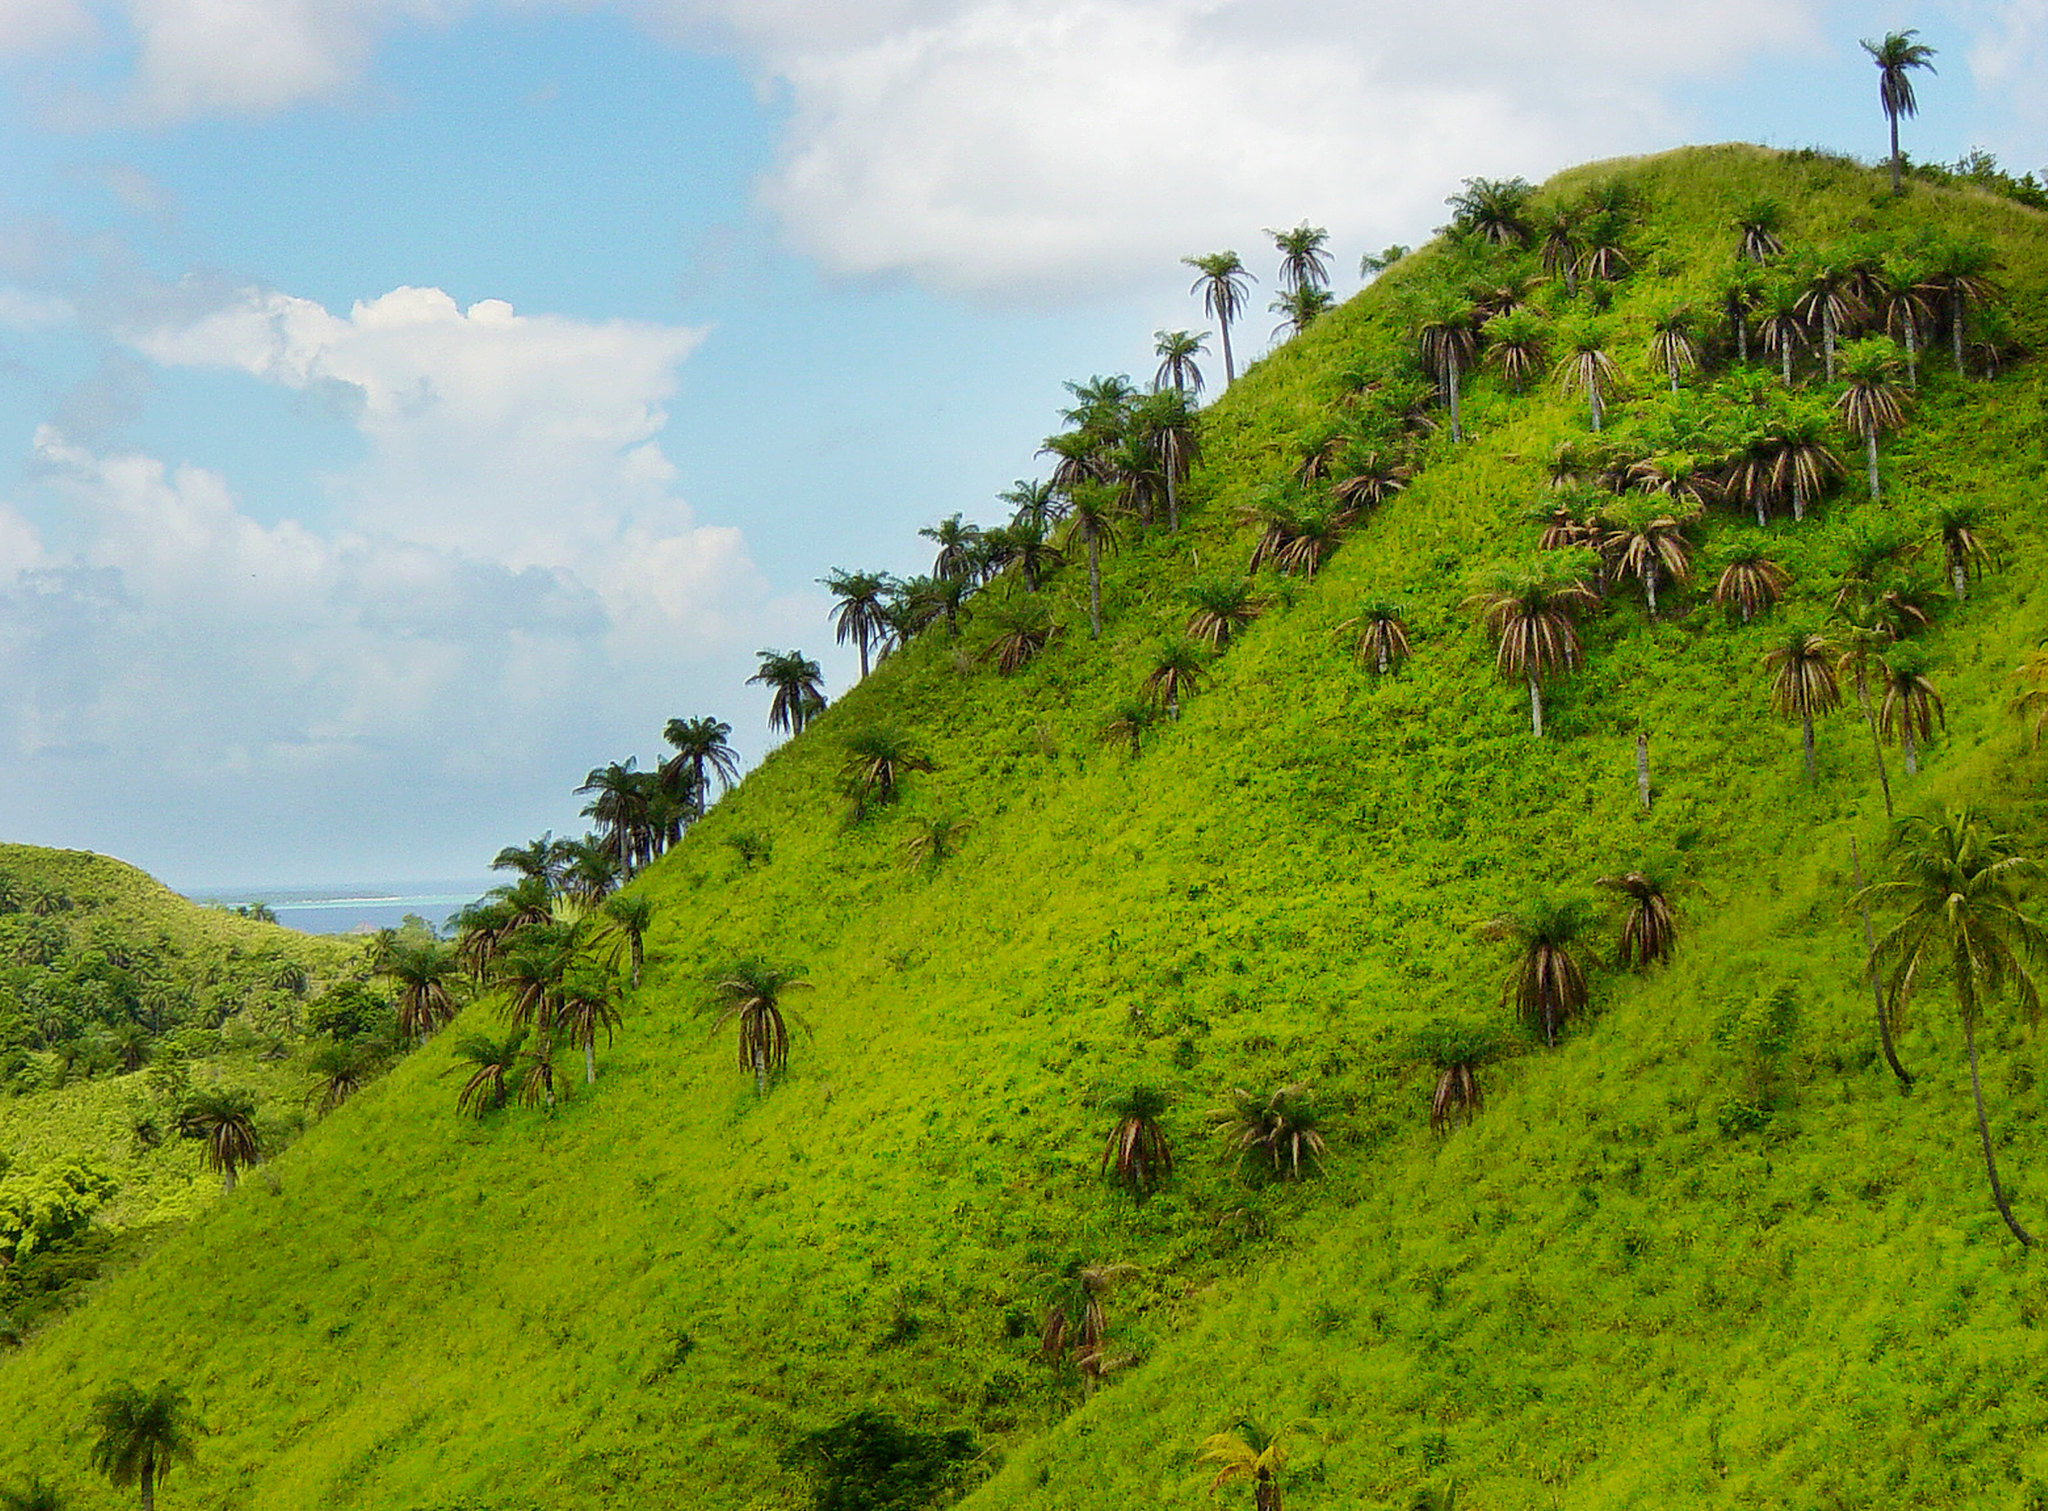 Tobago hillside, Jerry Rabinowitz, 2002, Rainforest Alliance